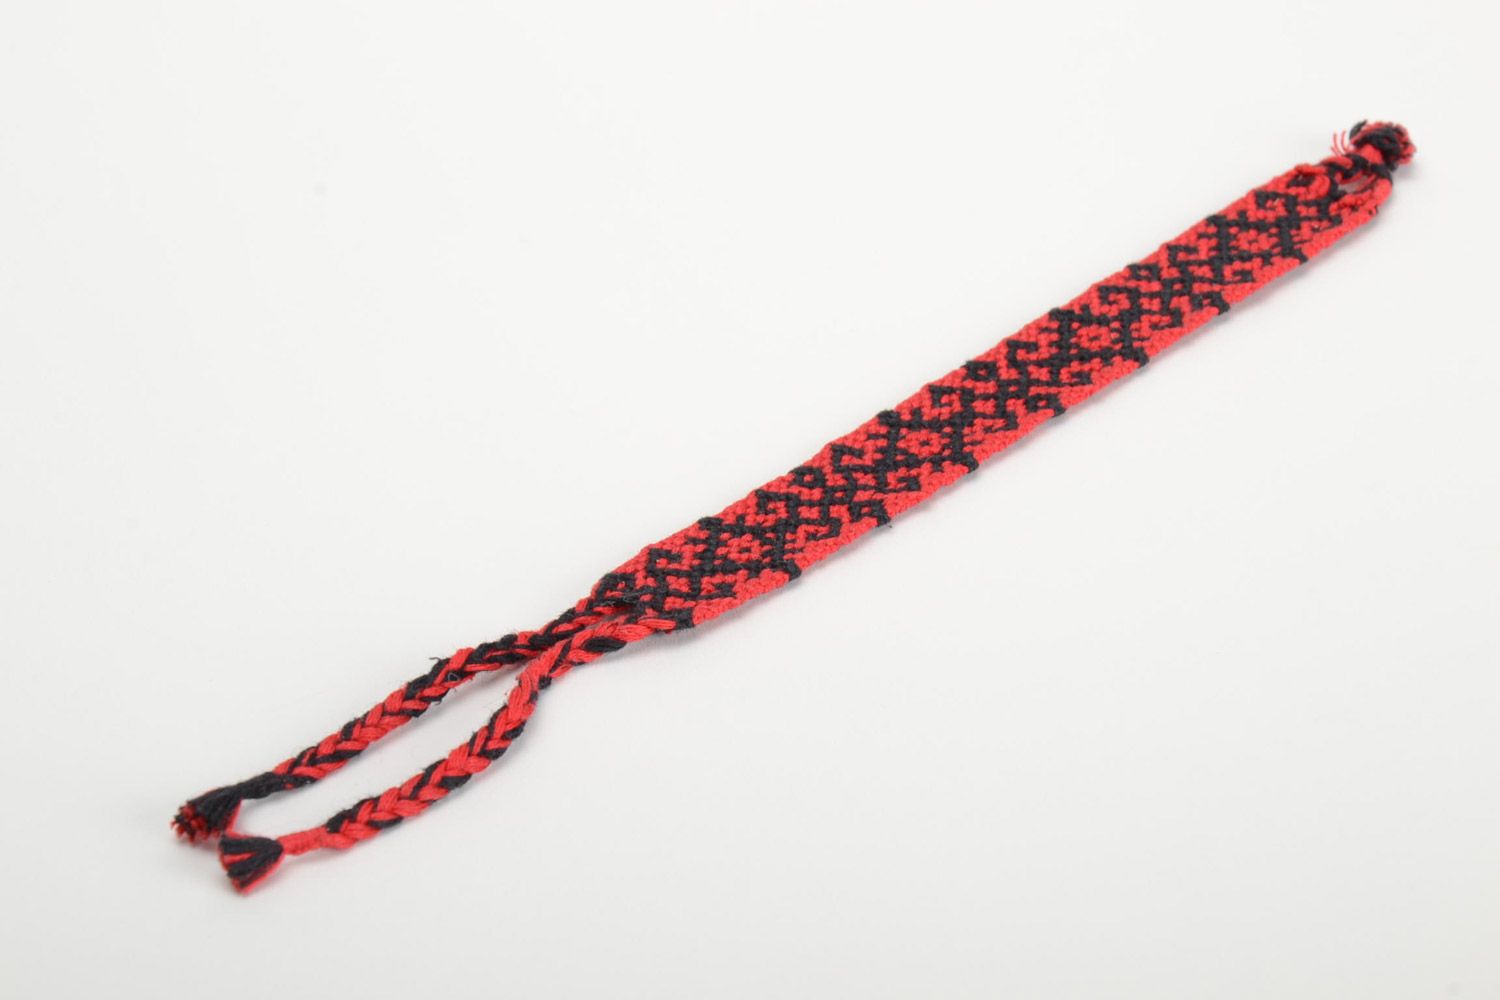 Текстильный браслет из ниток наручный красный с черным орнаментом ручная работа фото 2